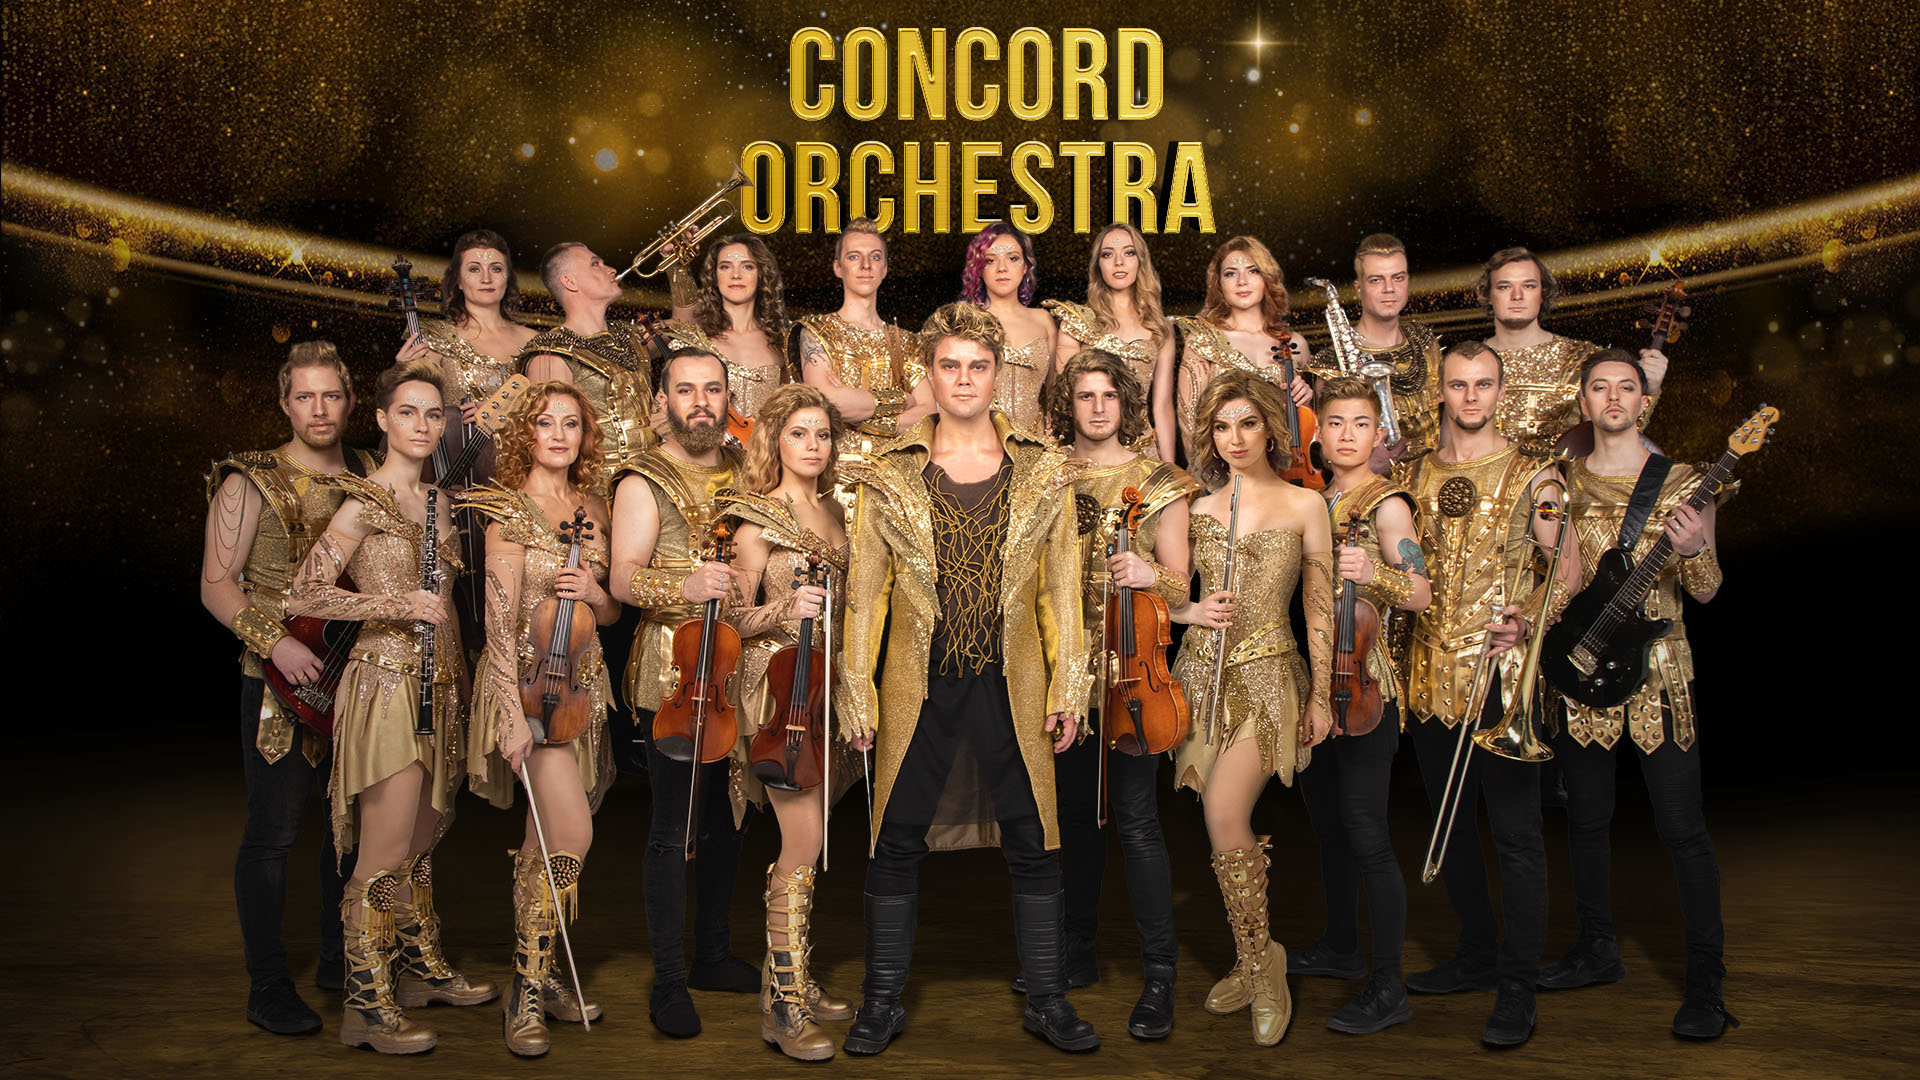 Concord orchestra состав